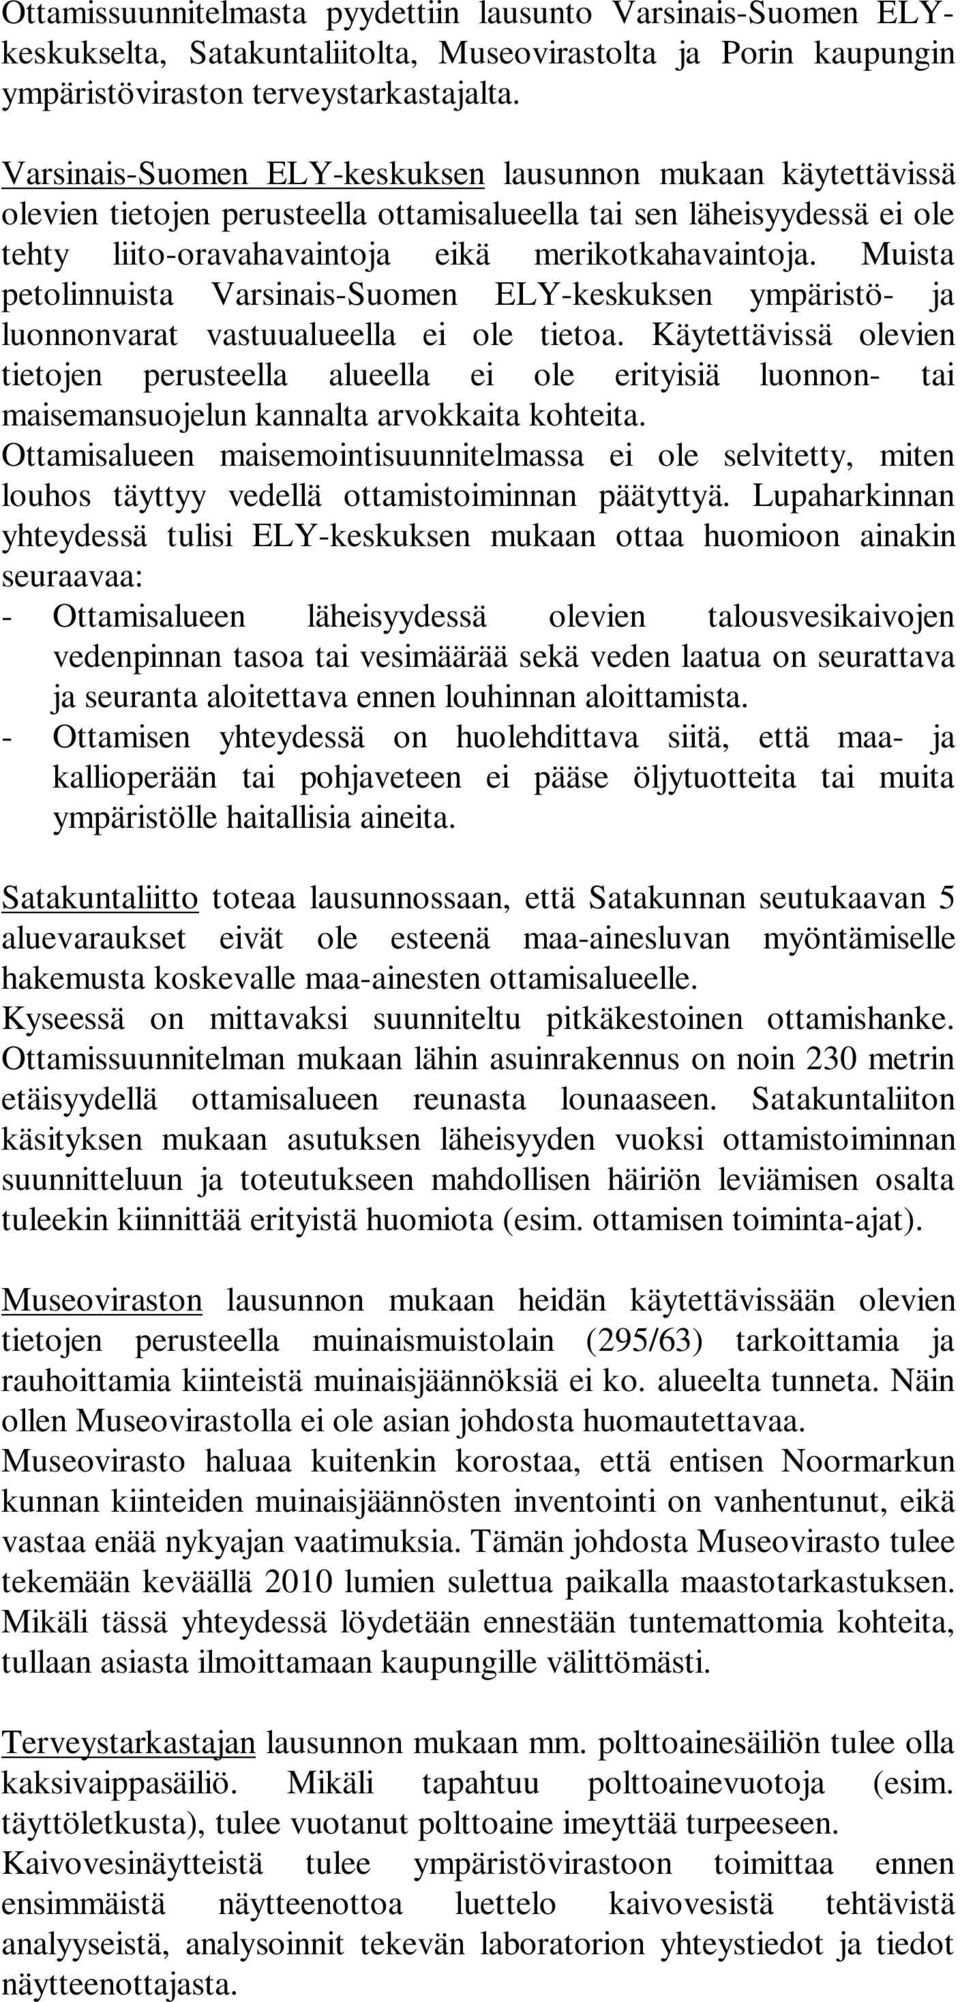 Muista petolinnuista Varsinais-Suomen ELY-keskuksen ympäristö- ja luonnonvarat vastuualueella ei ole tietoa.